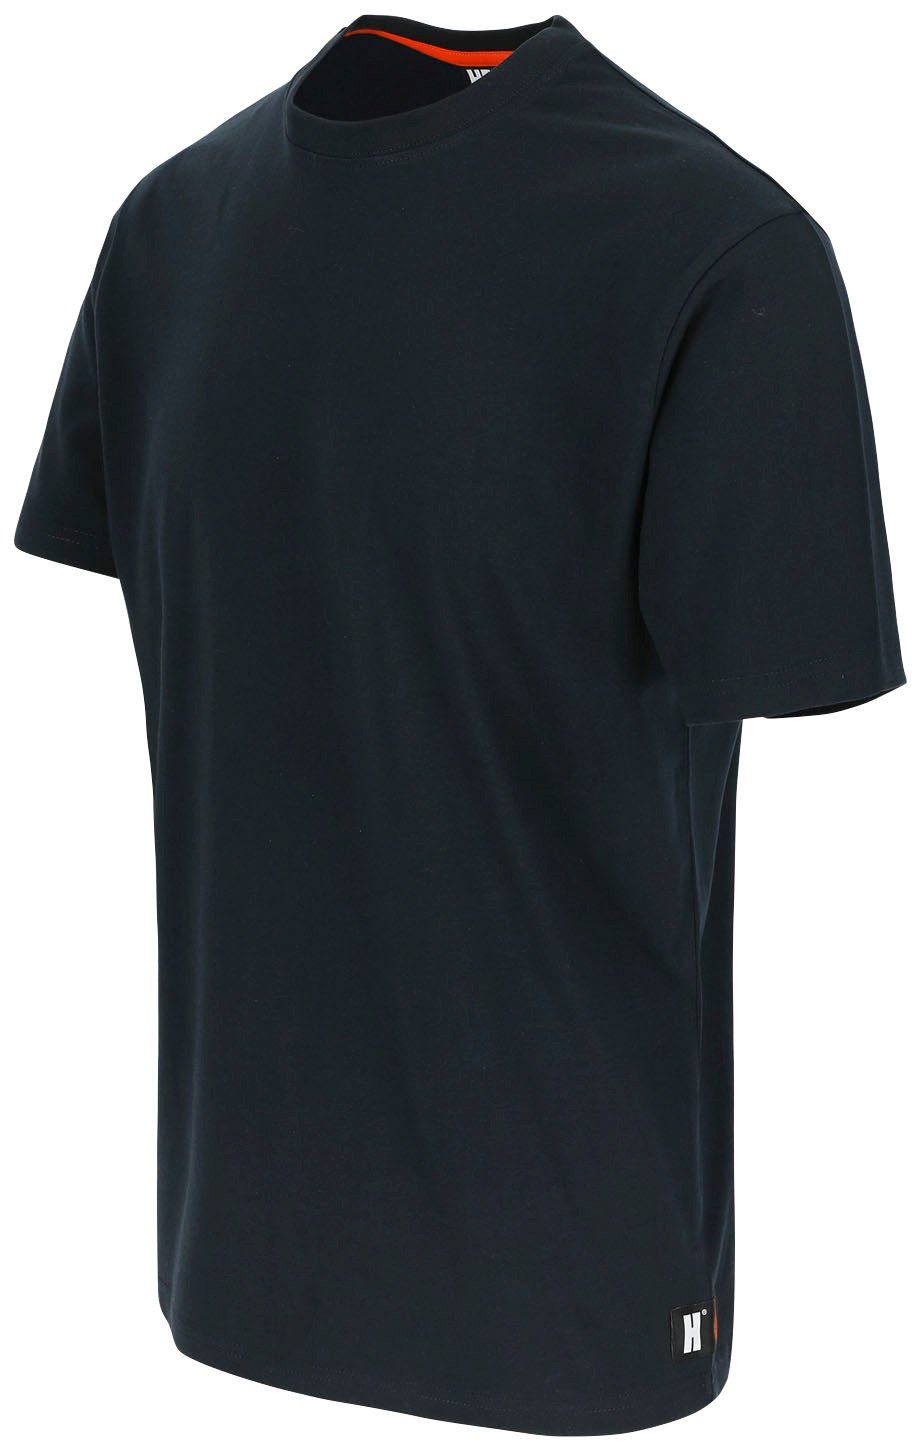 Callius blau T-Shirt Herock®-Aufdruck, Rundhalsausschnitt, Ärmel Herock Ärmel, kurze T-Shirt Rippstrickkragen kurze